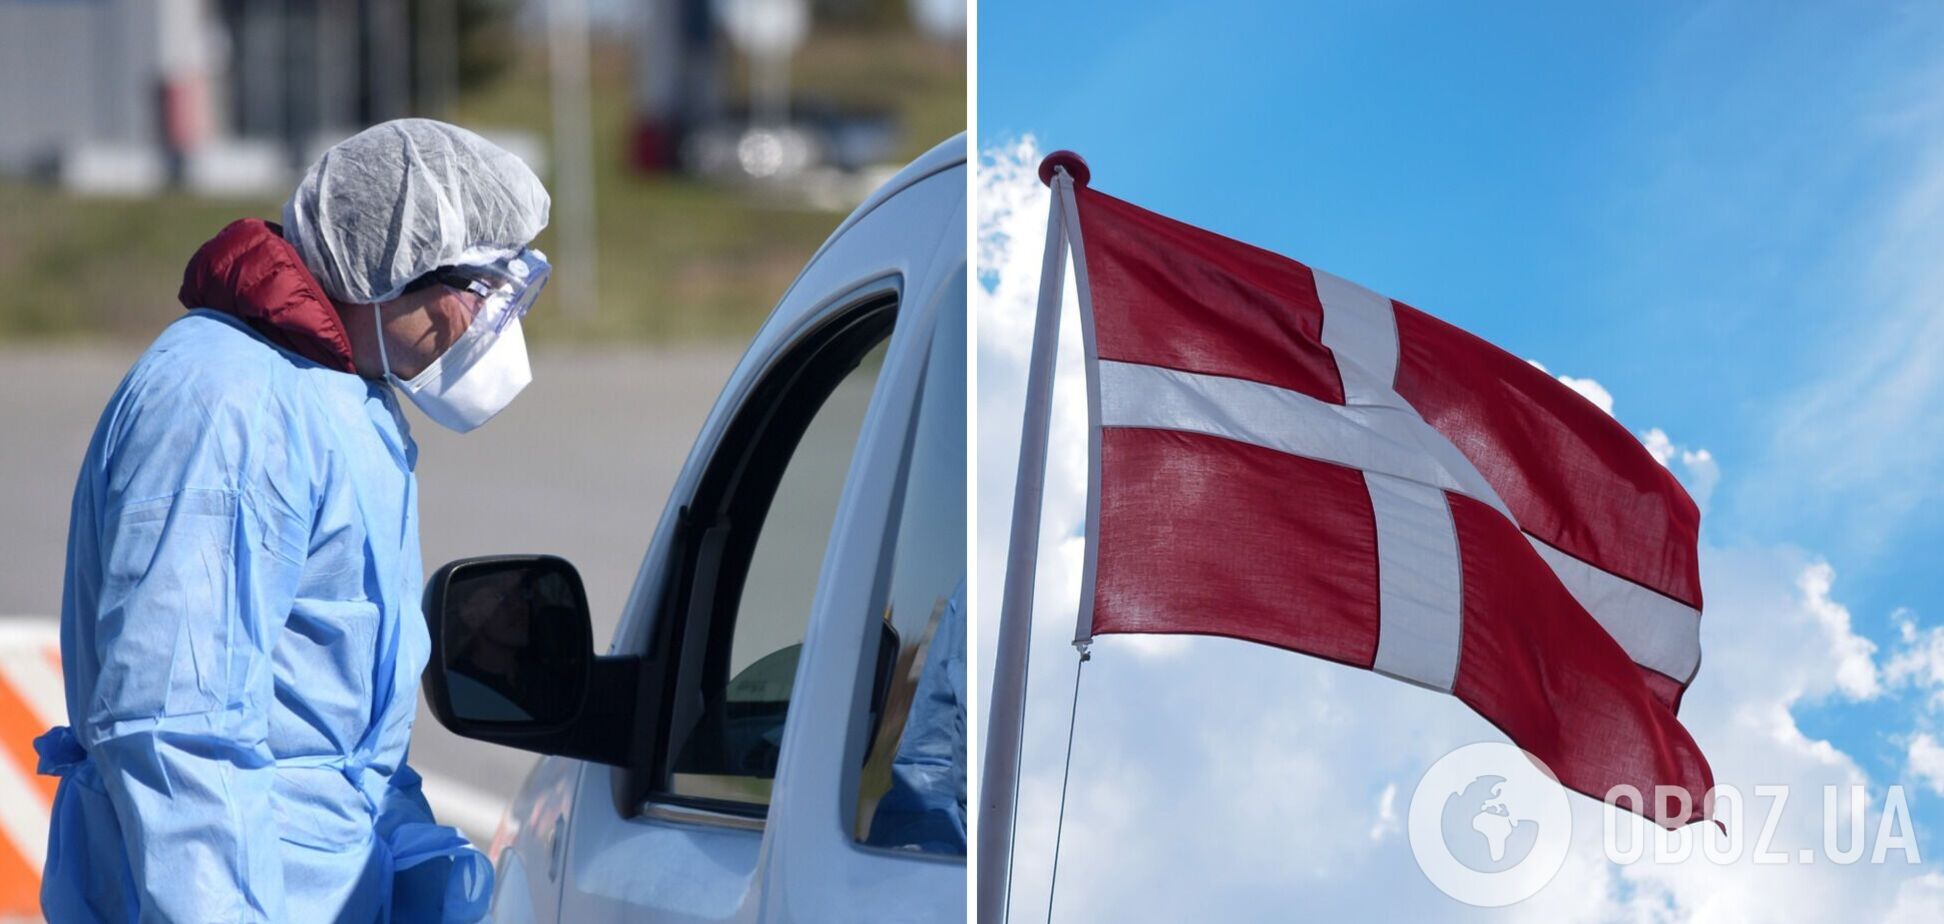 Дания четвертый день подряд бьет рекорды по заражению COVID-19